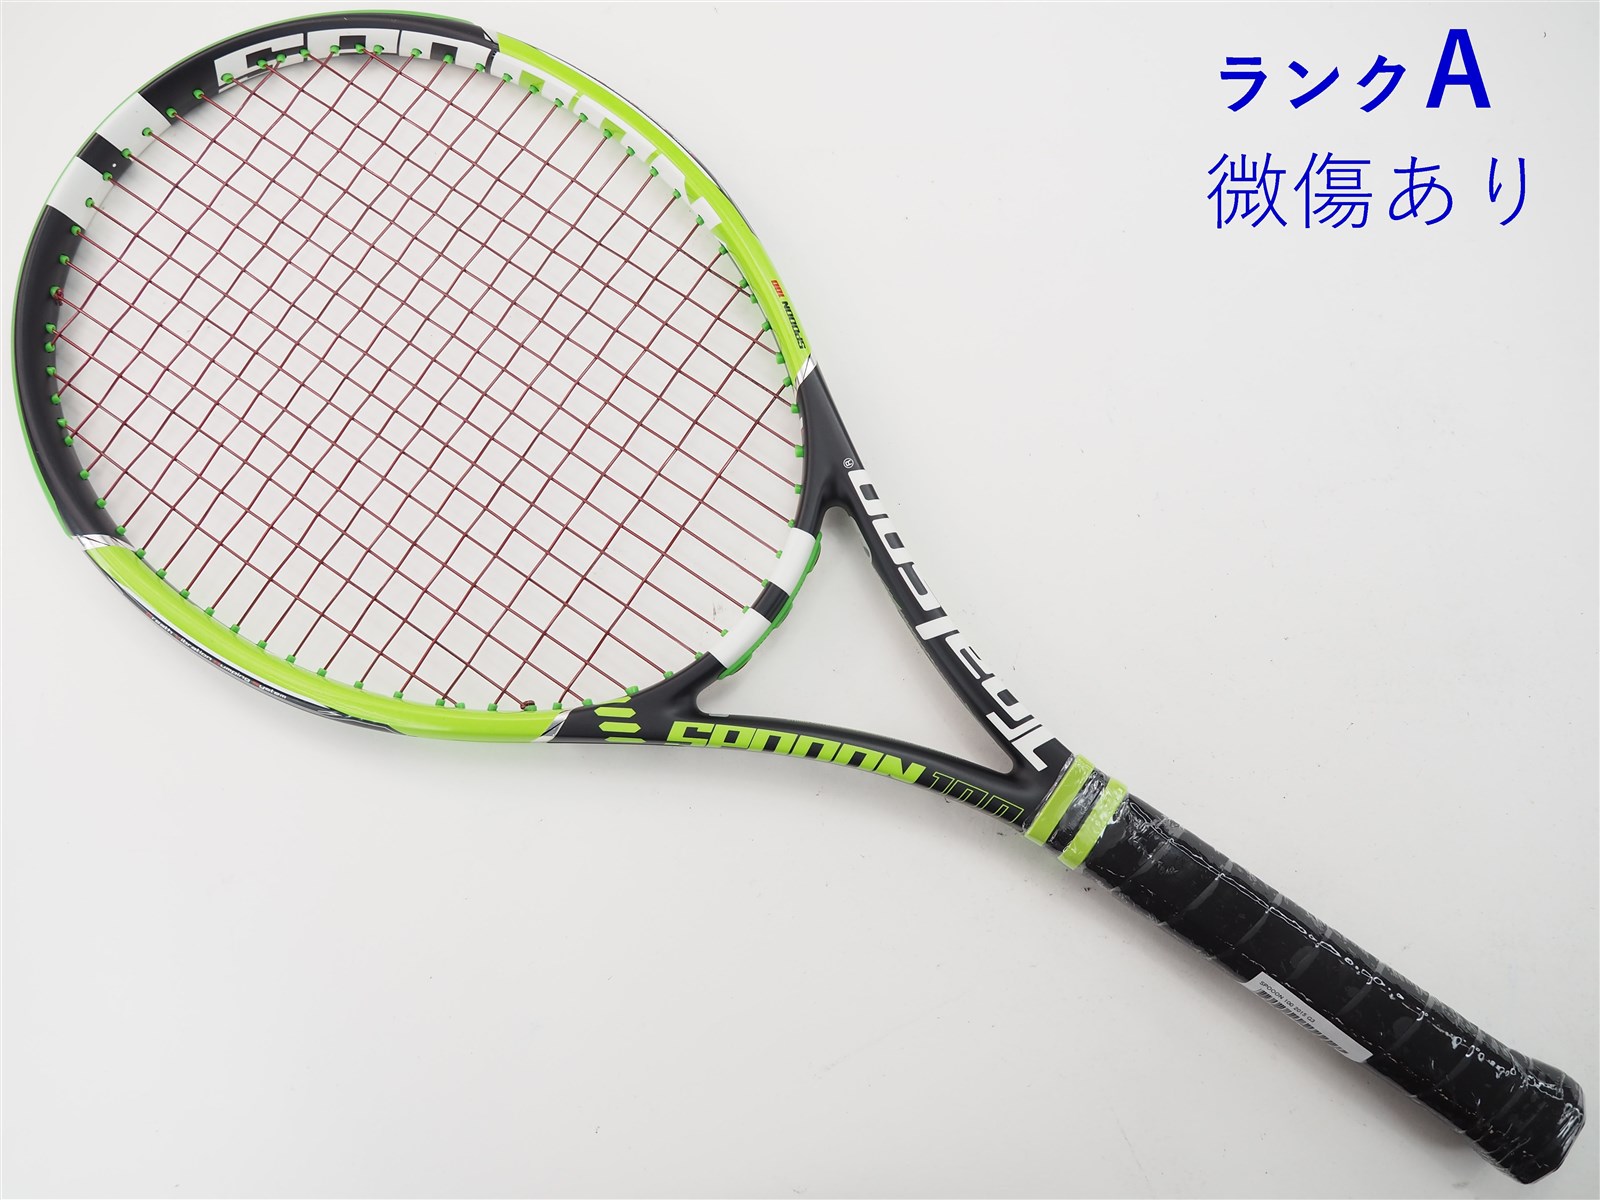 テニスラケット バボラ ピュア アエロ 2015年モデル (G4)BABOLAT PURE